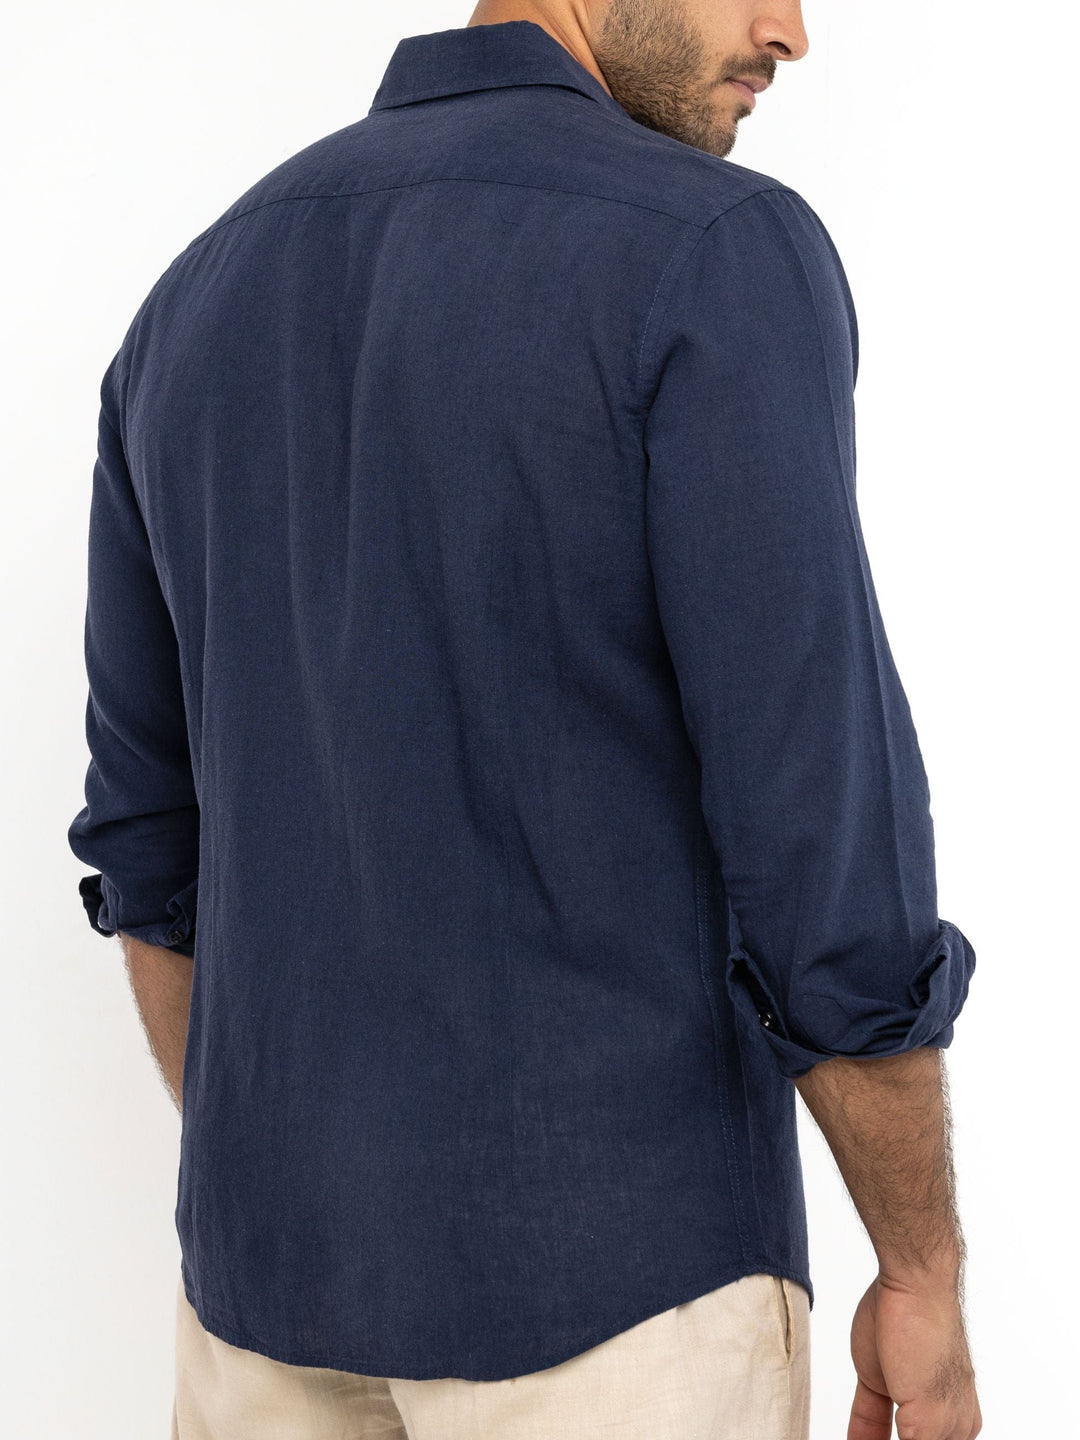 Zhivago x Nuuk Men Linen Shirt Navy Blue Linen Shirt